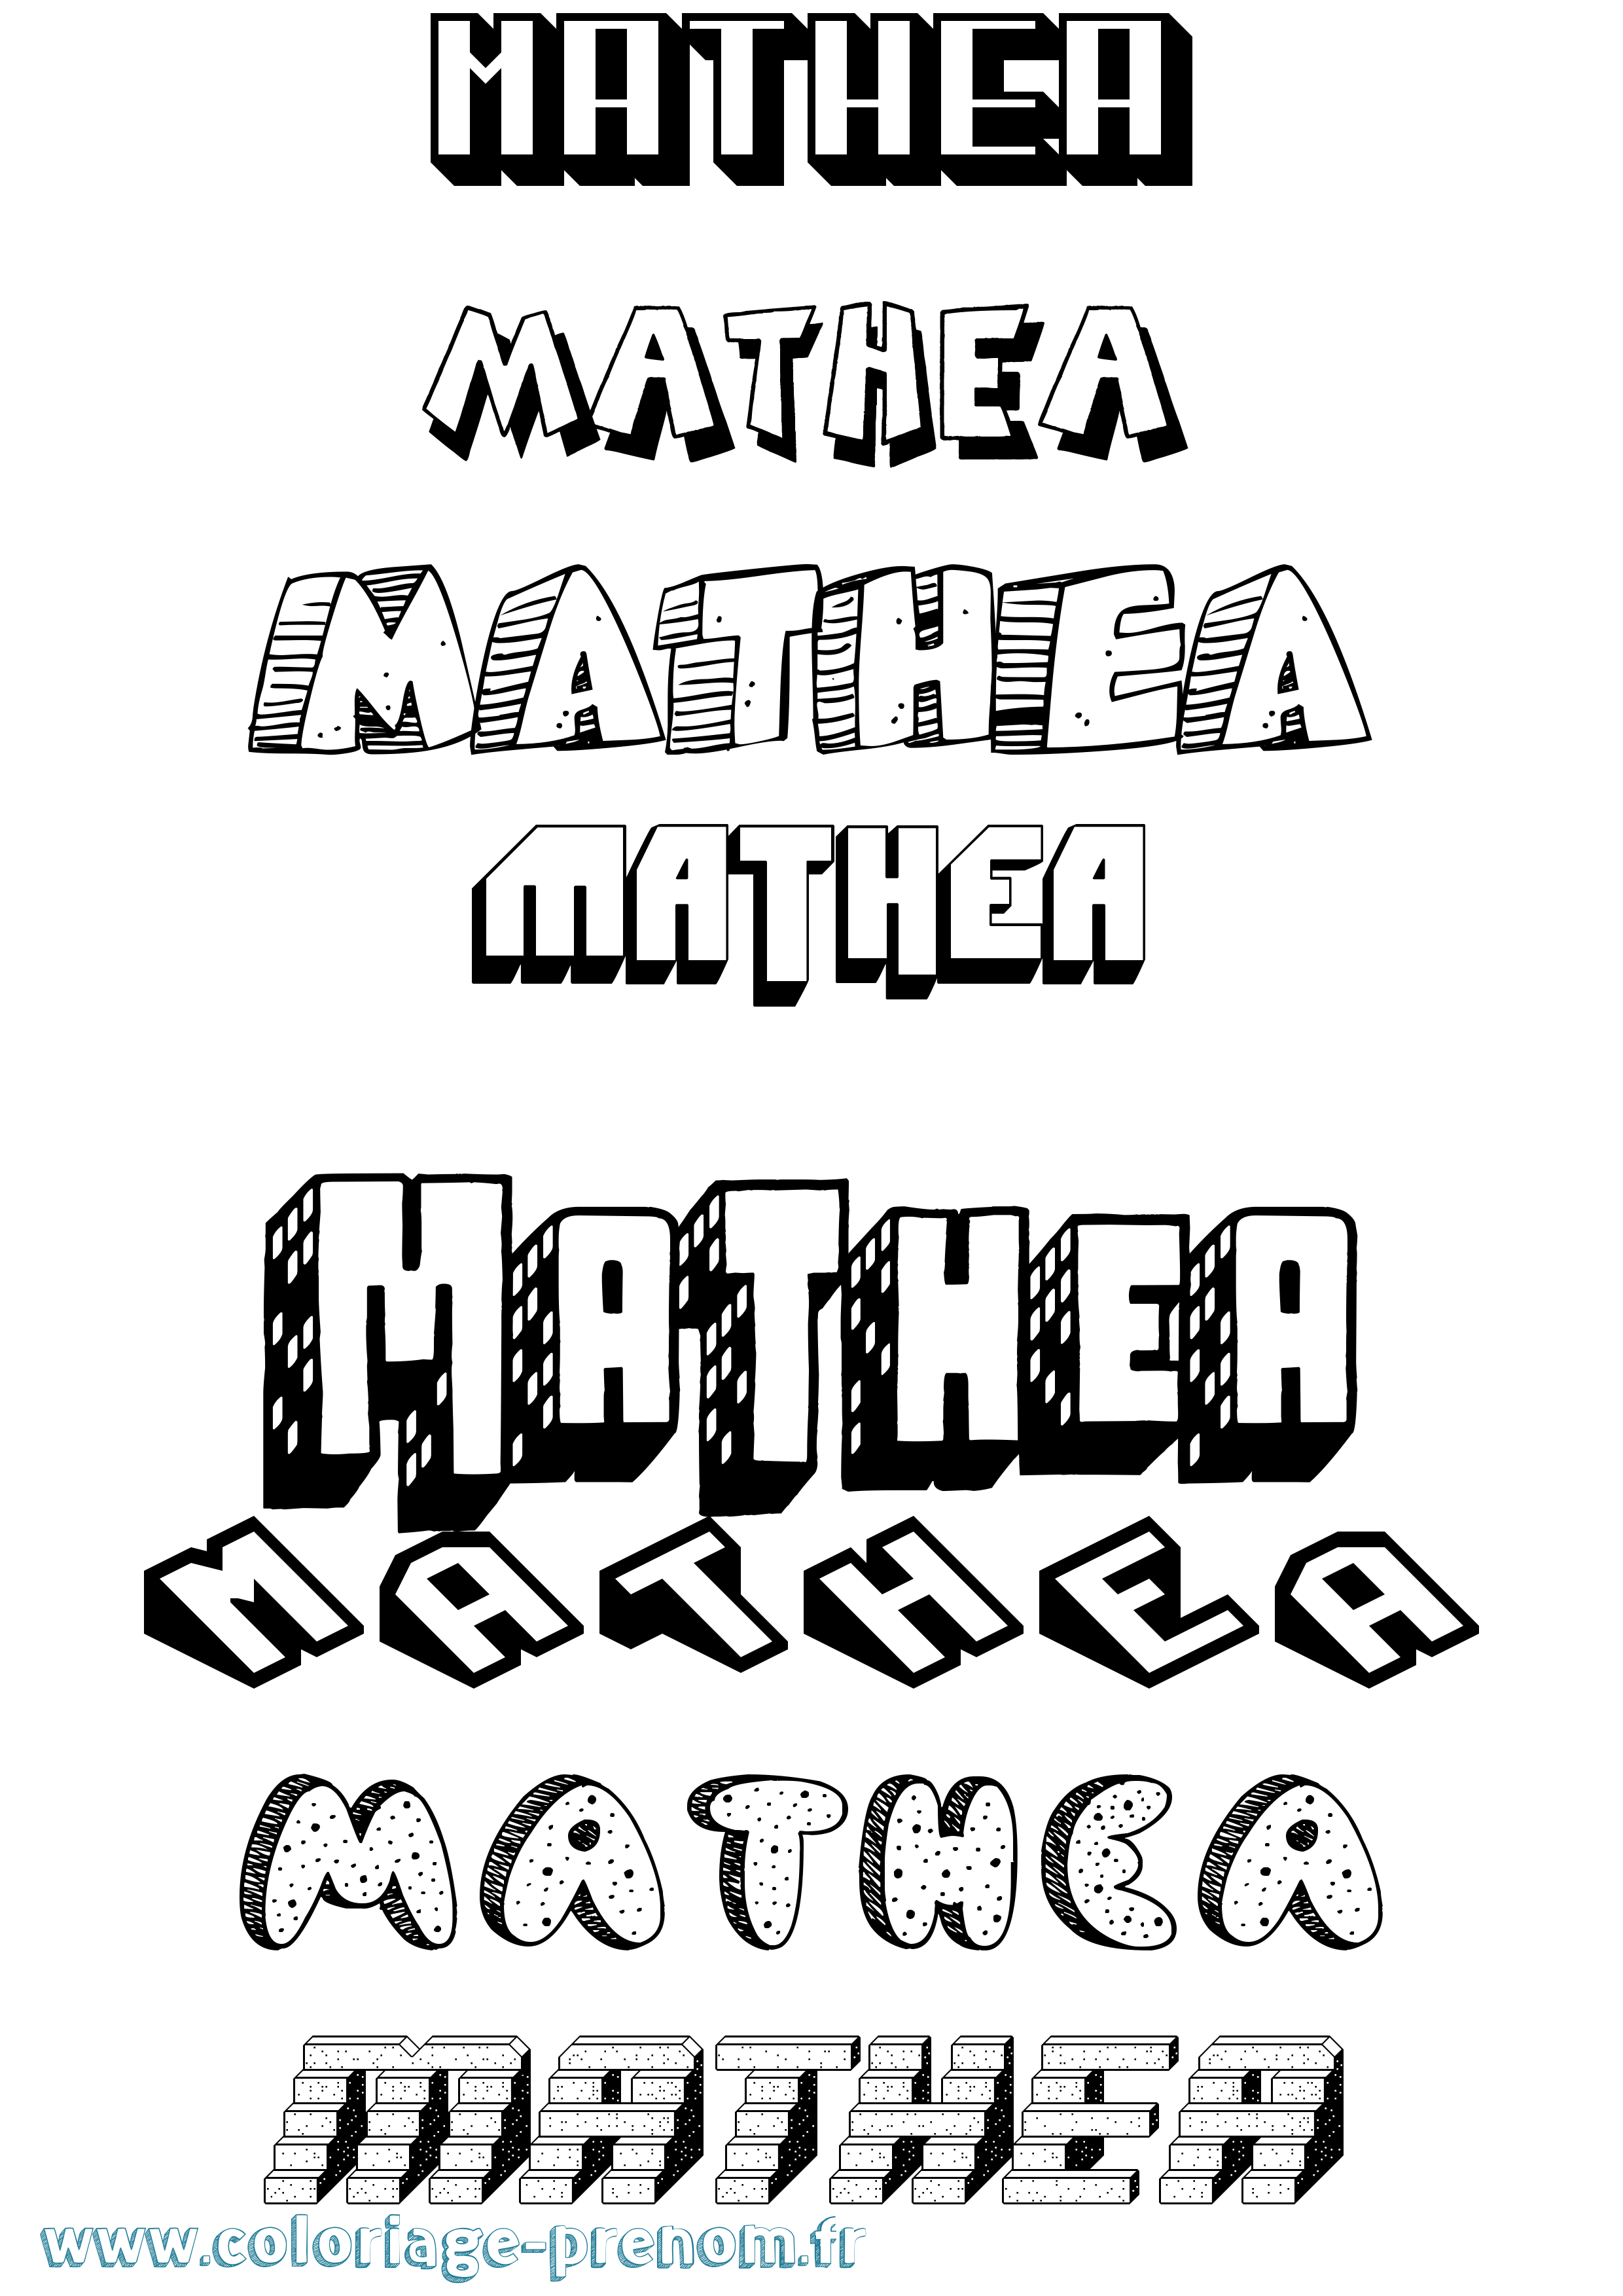 Coloriage prénom Mathea Effet 3D